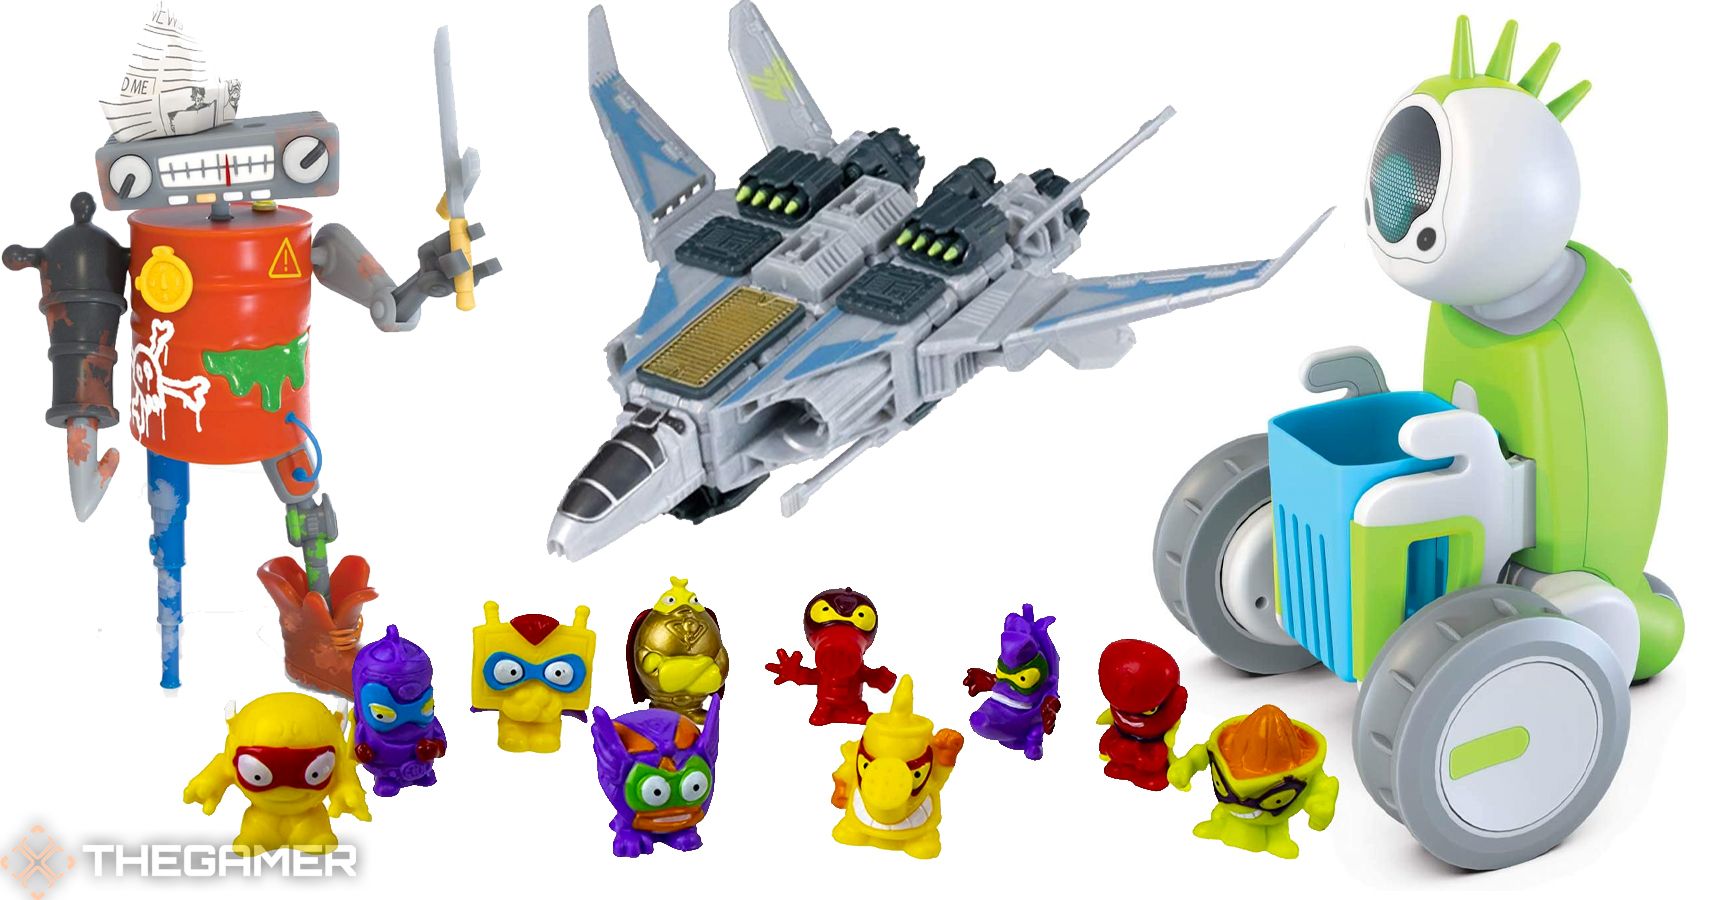 Hexbug Junkbots Single Bin Construction Kit Christmas Gift Toys item For Kids F